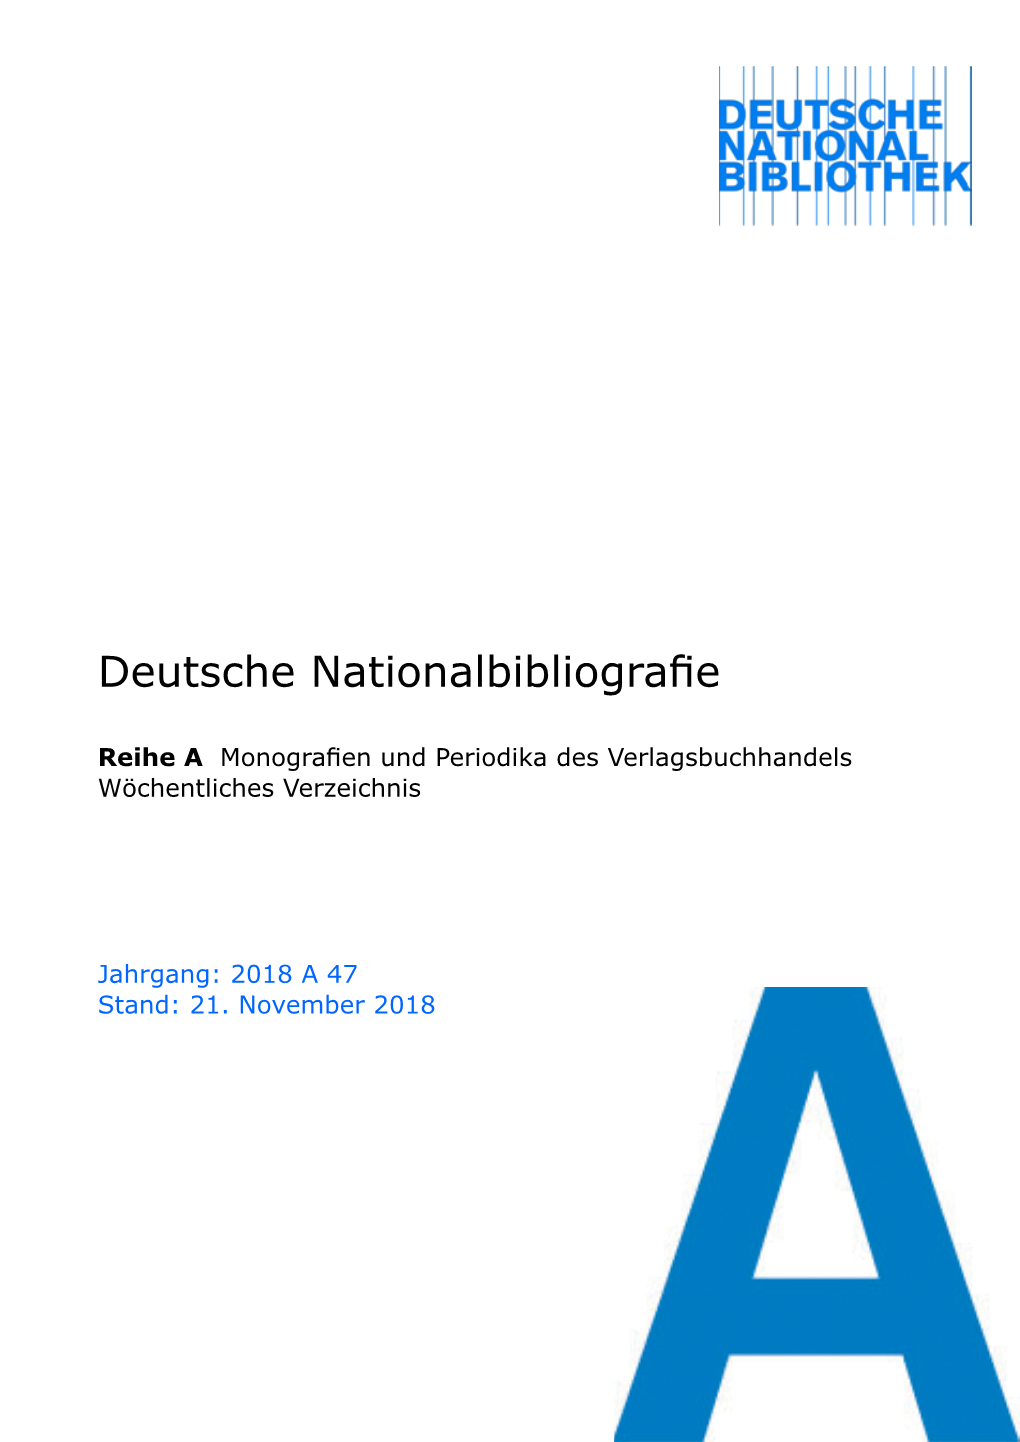 Deutsche Nationalbibliografie 2018 a 47